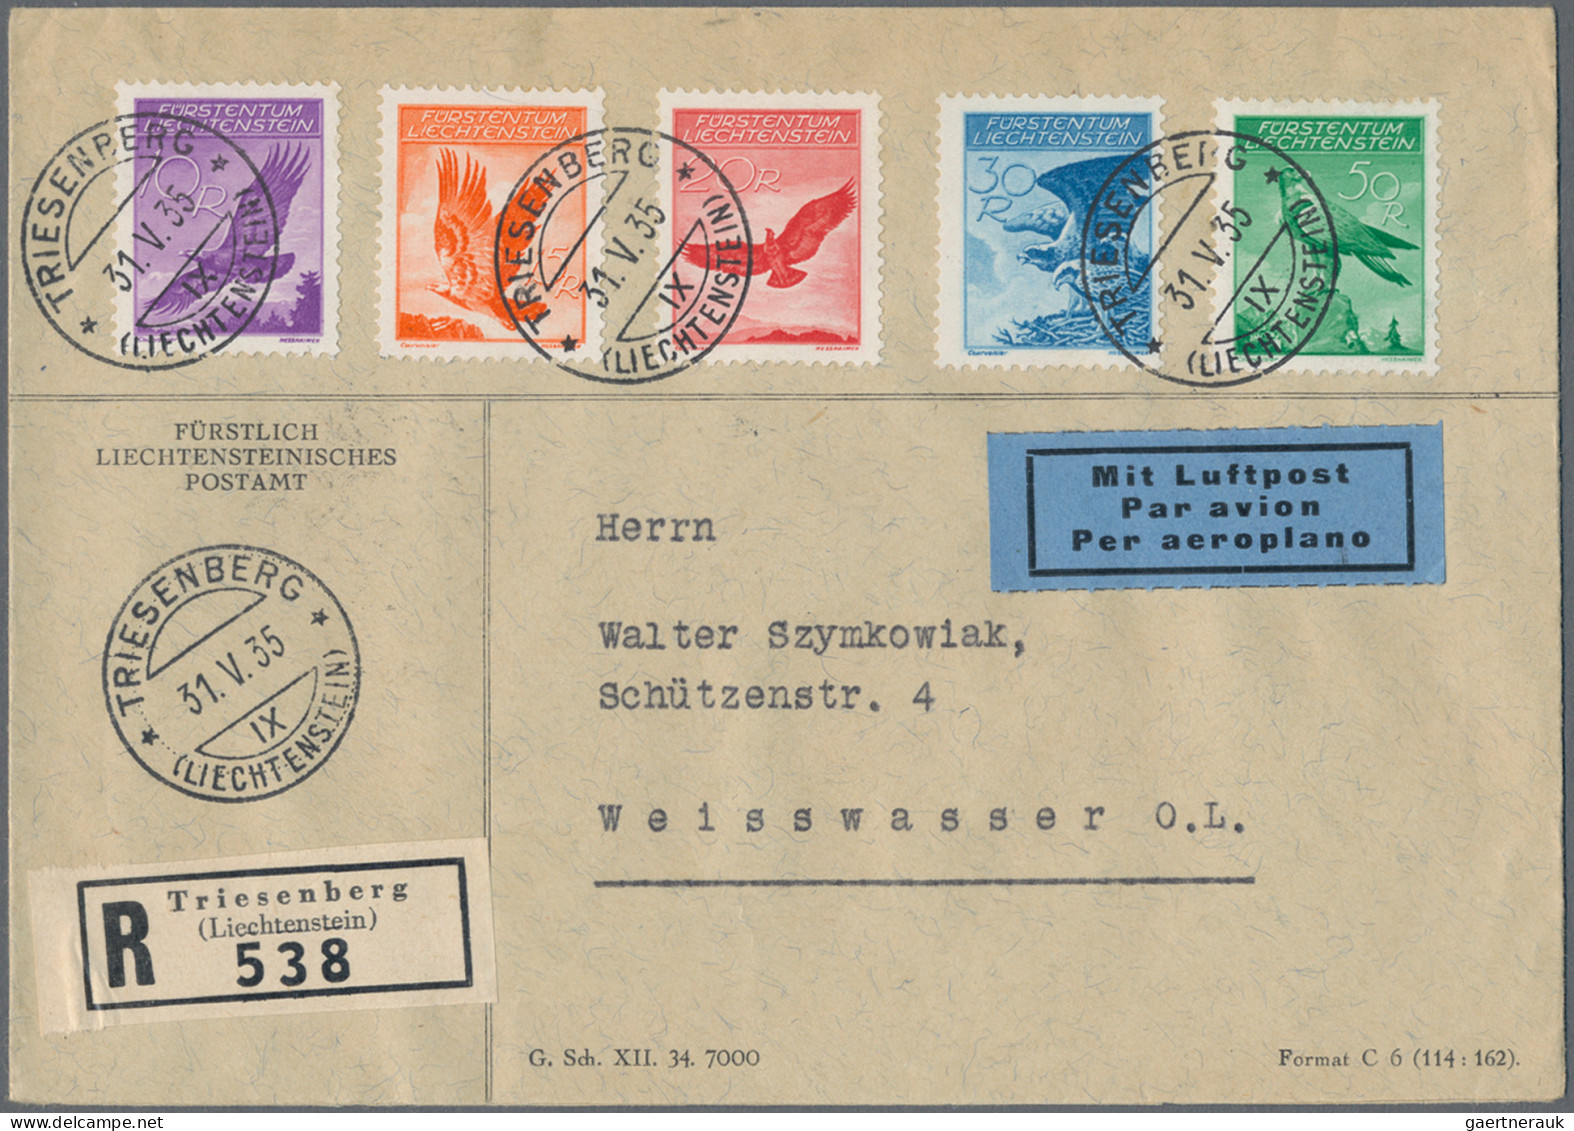 Liechtenstein: 1930/1938, sauberes Lot mit über 40 Briefen und Karten mit intere